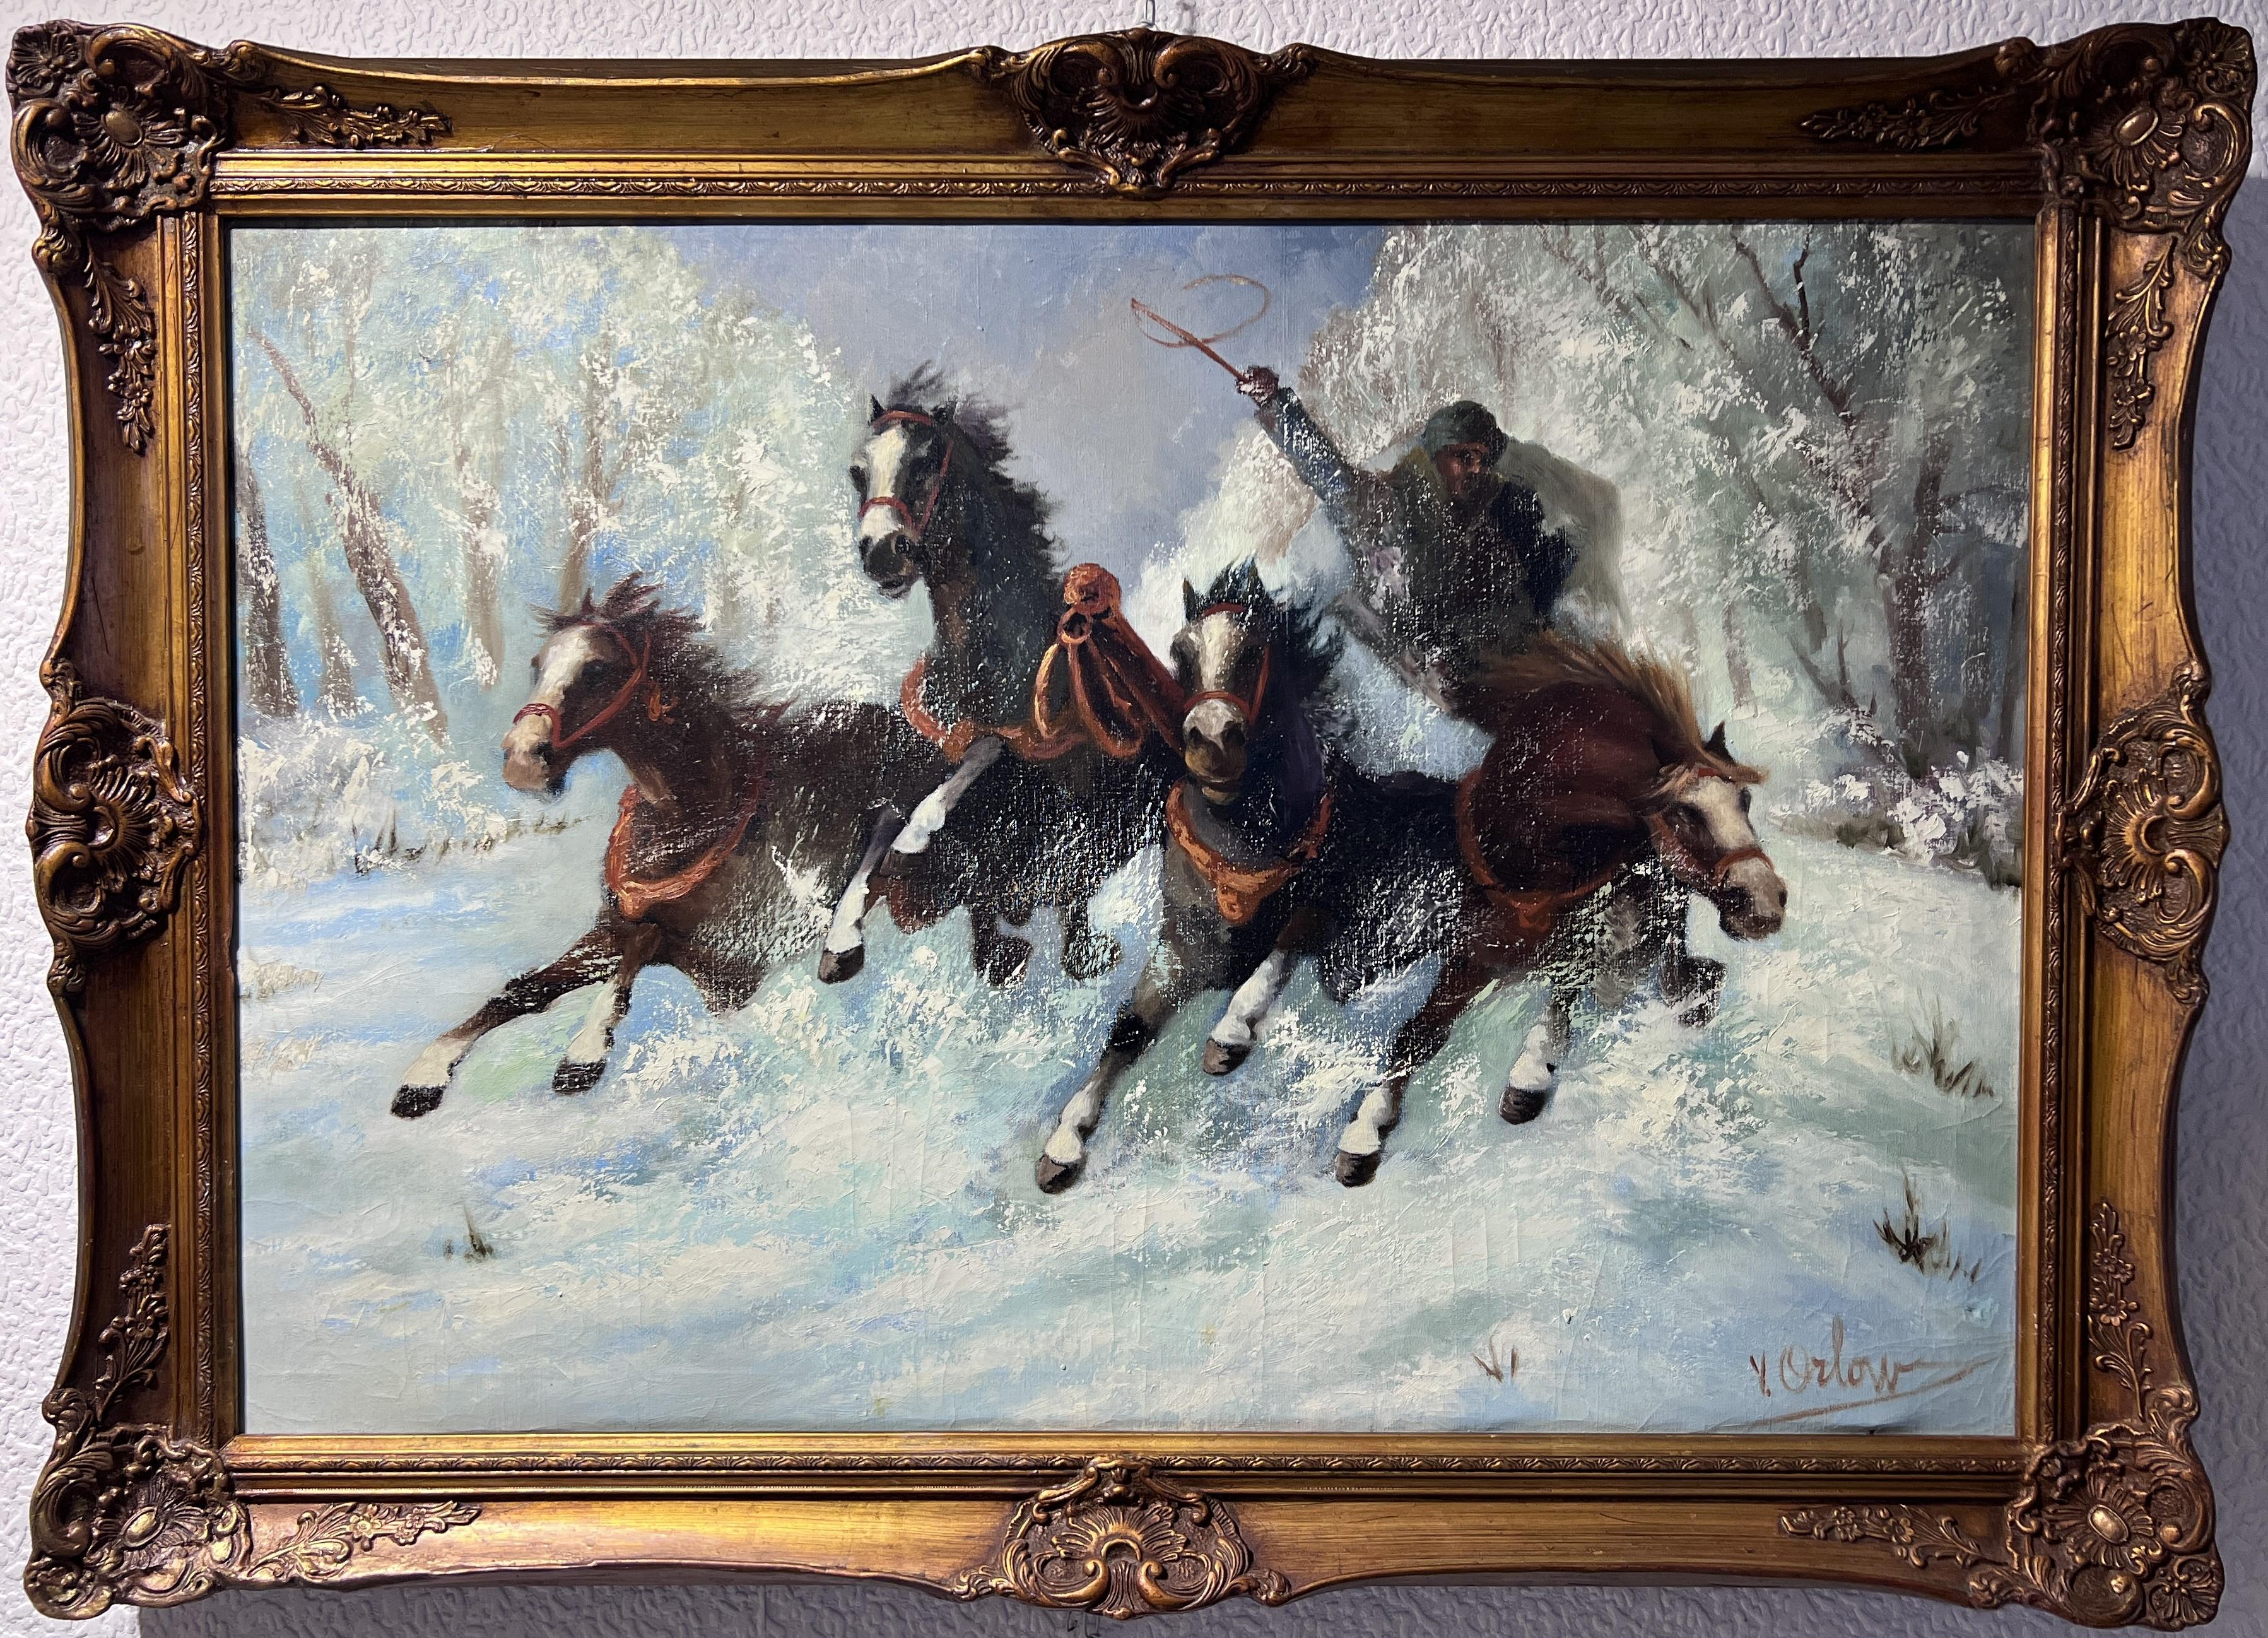 Zum Verkauf steht ein beeindruckendes Vintage-Ölgemälde auf Leinwand, das eine Szene mit einem Kutscher zeigt, der mit vier Pferden in einem Geschirr in einer Winterlandschaft fährt.

Signiert in der unteren rechten Ecke V.Orlow. Er wurde 1911